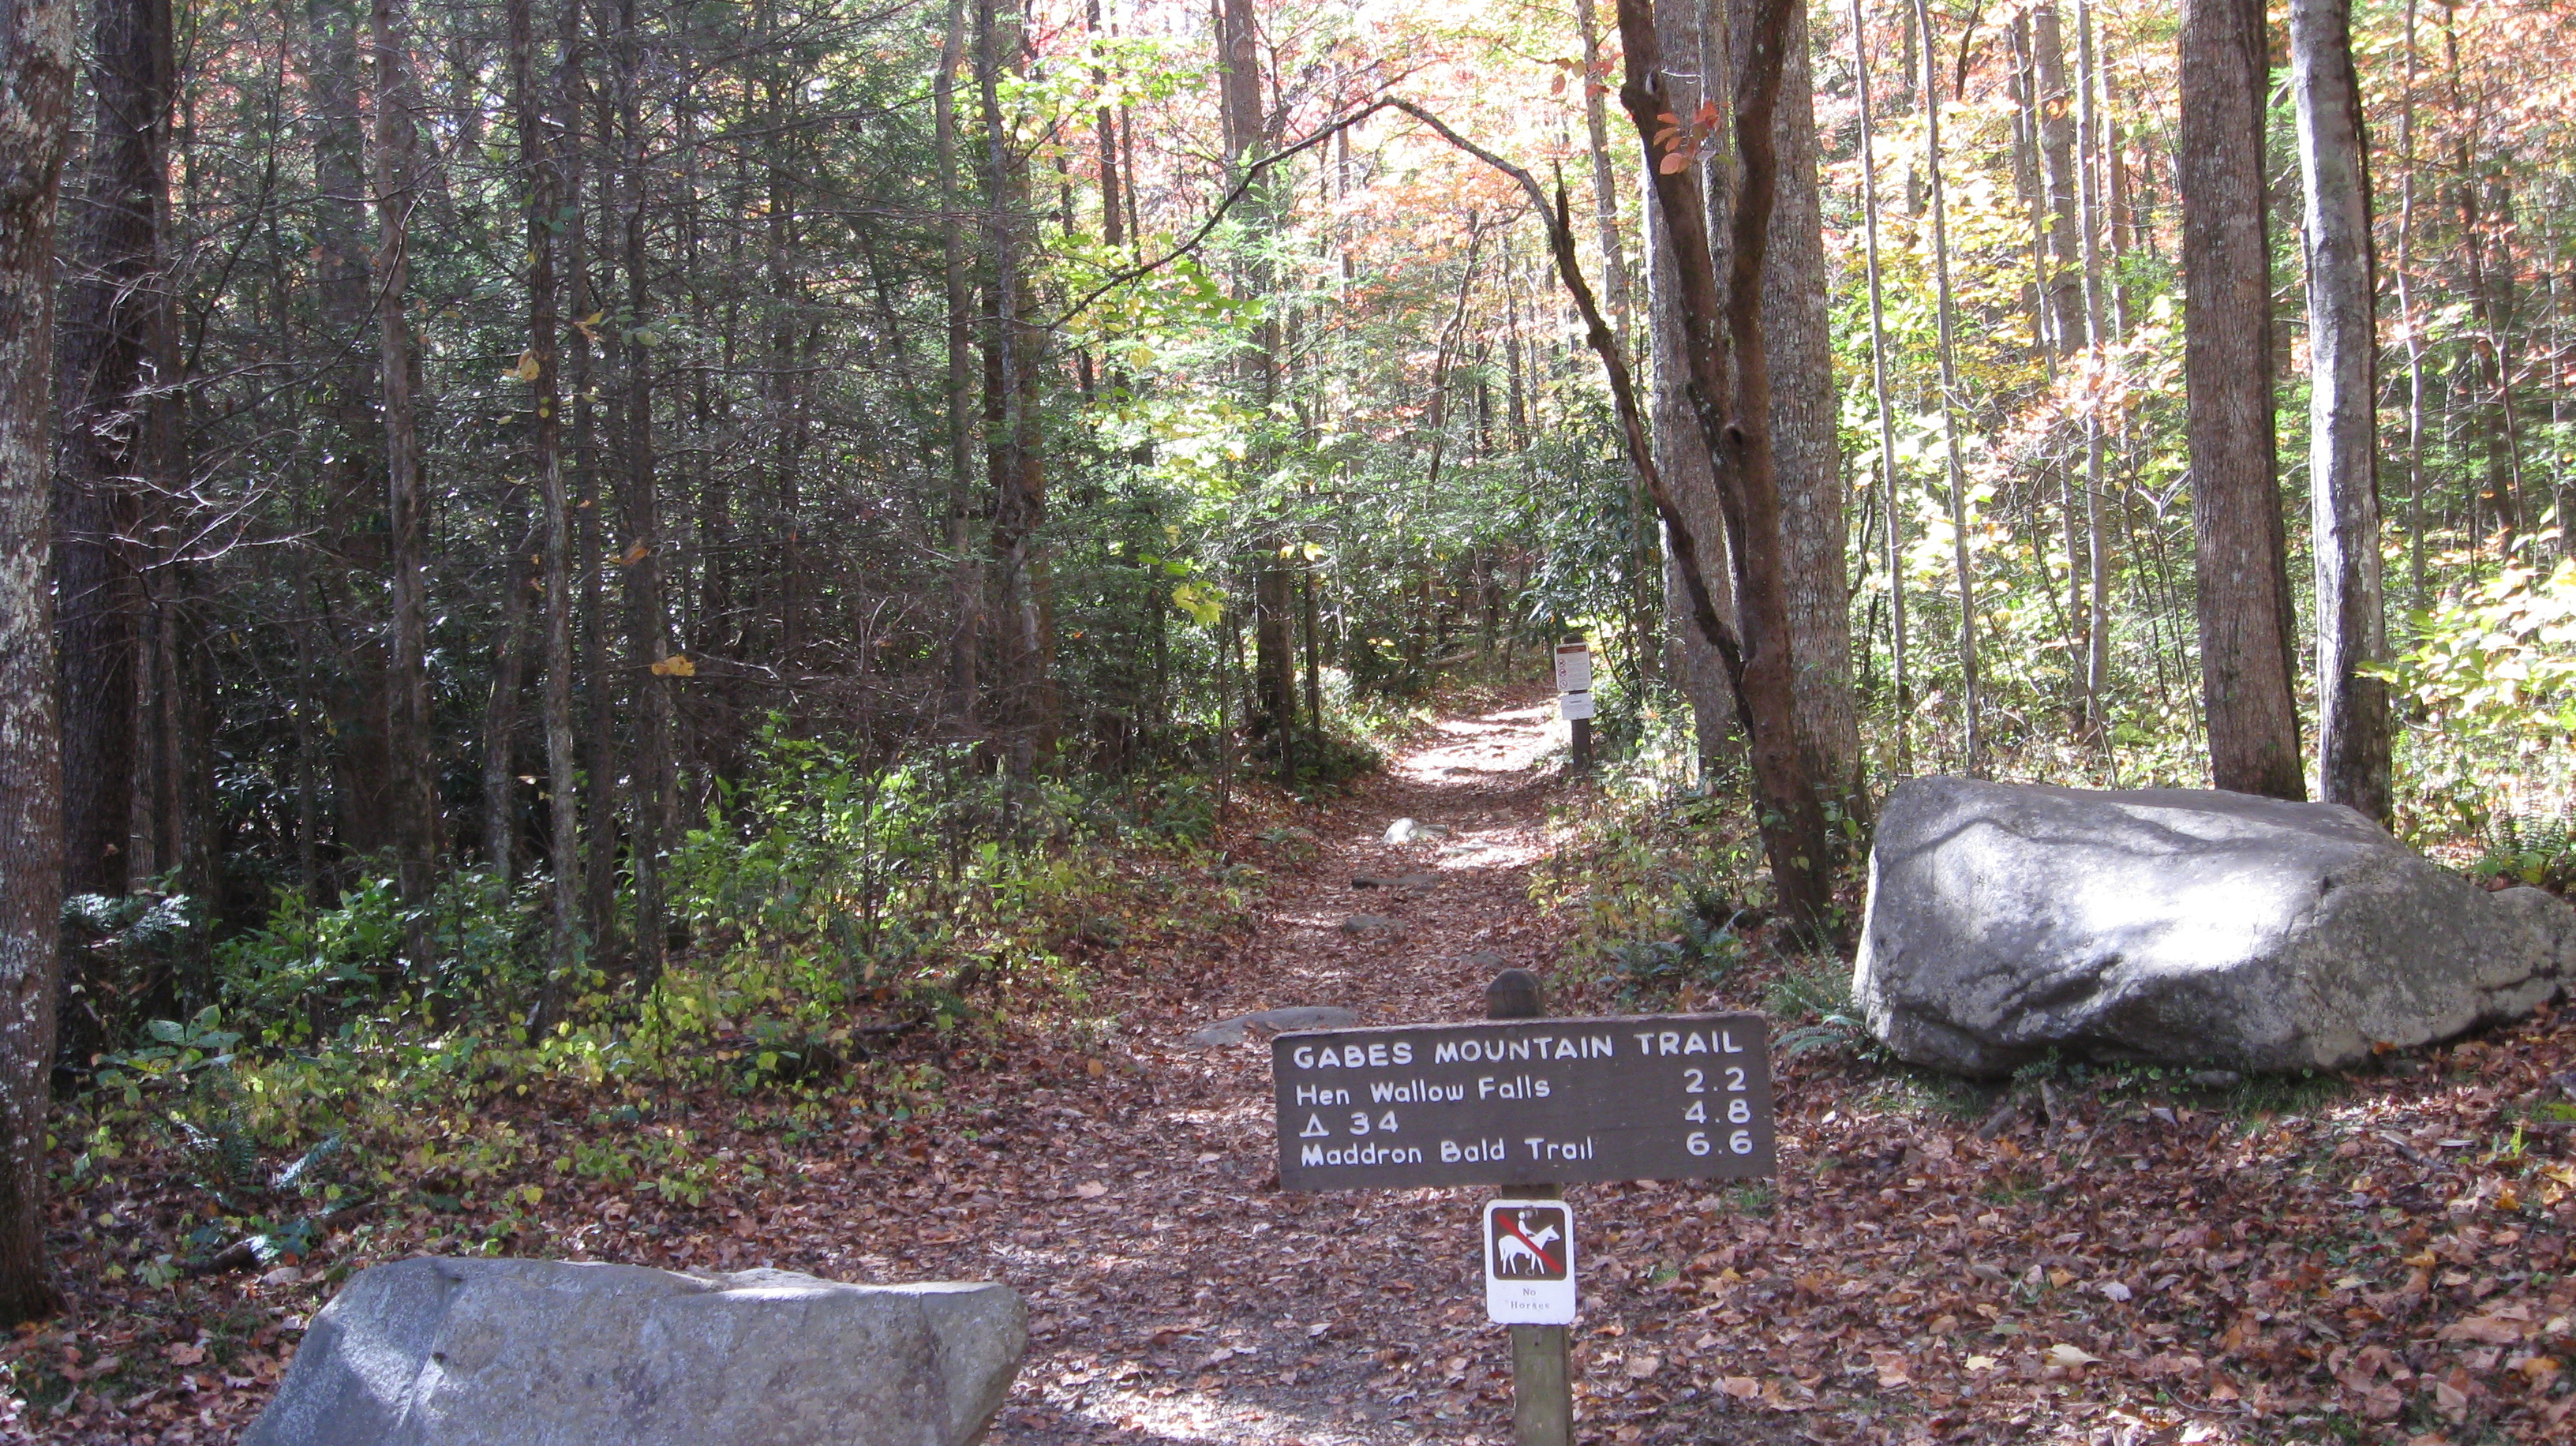 Gabes Mountain Trailhead sign